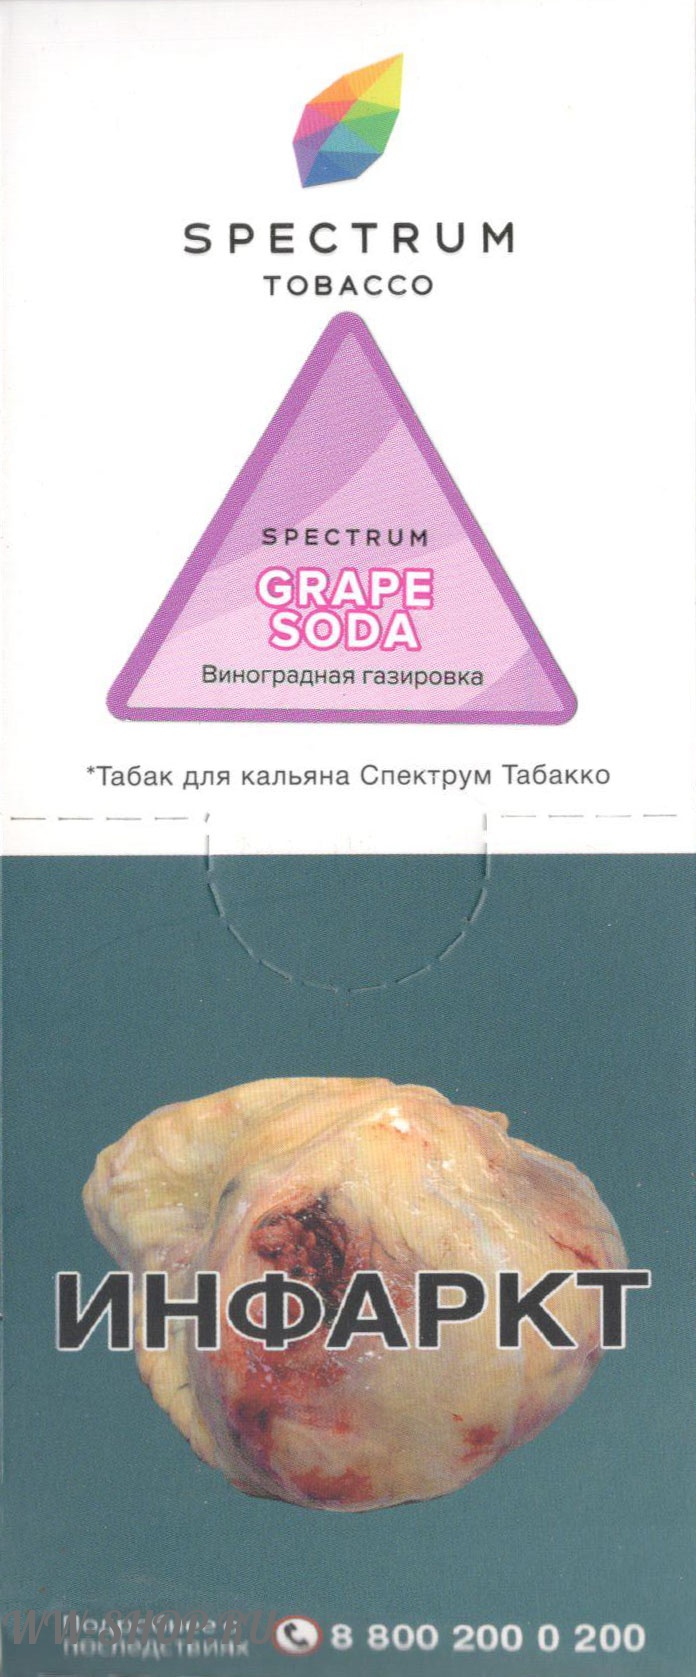 spectrum- виноградная газировка (grape soda) Тверь